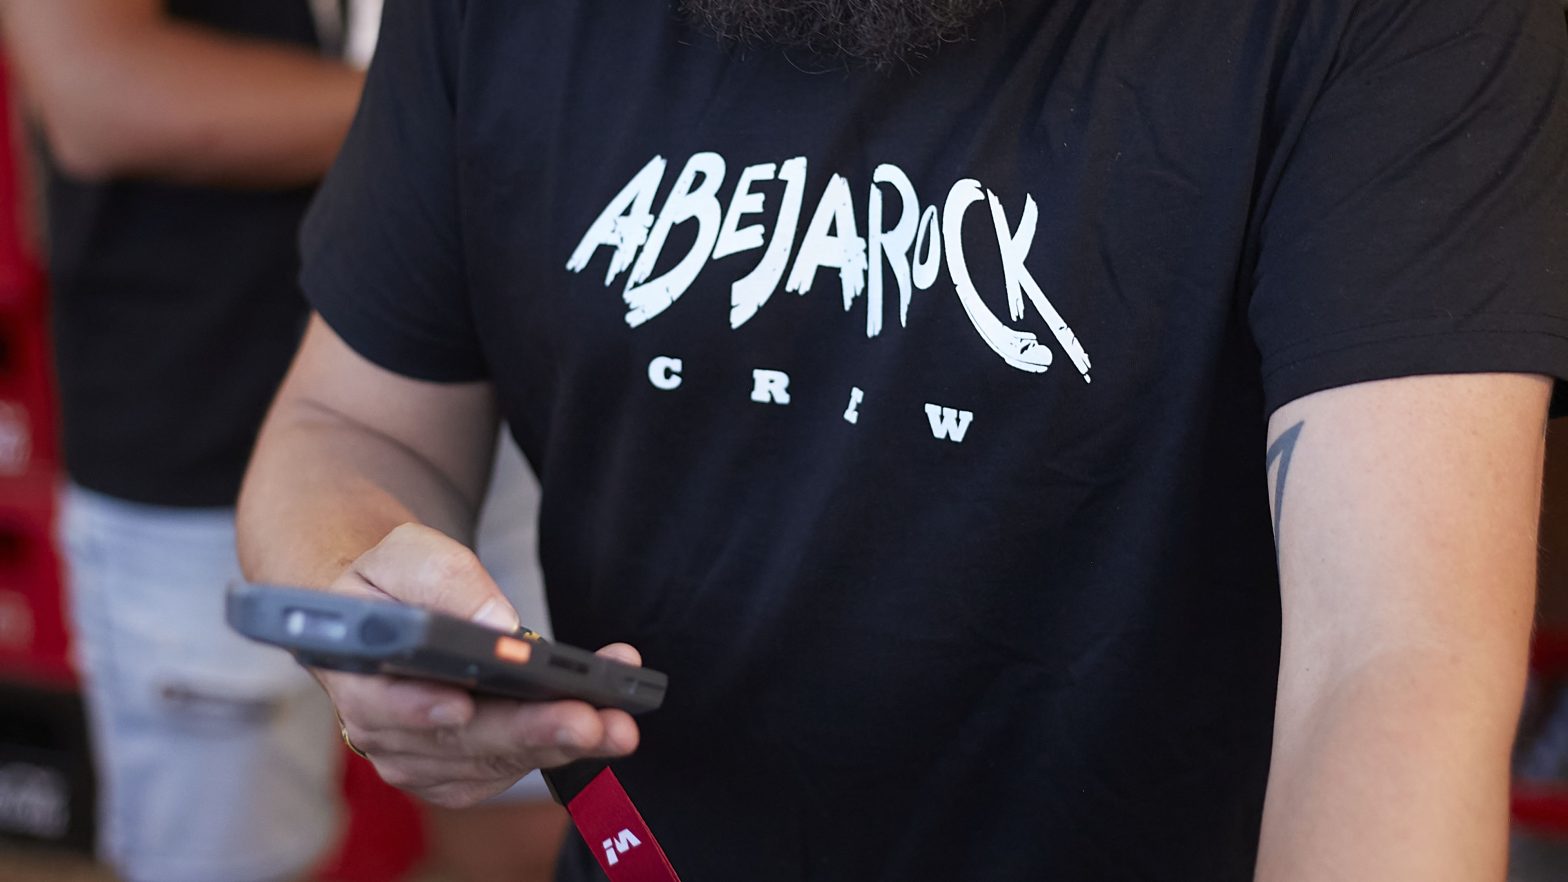 Imagen de la camiseta de la CREW del festival de Rock AbejaRock 2023